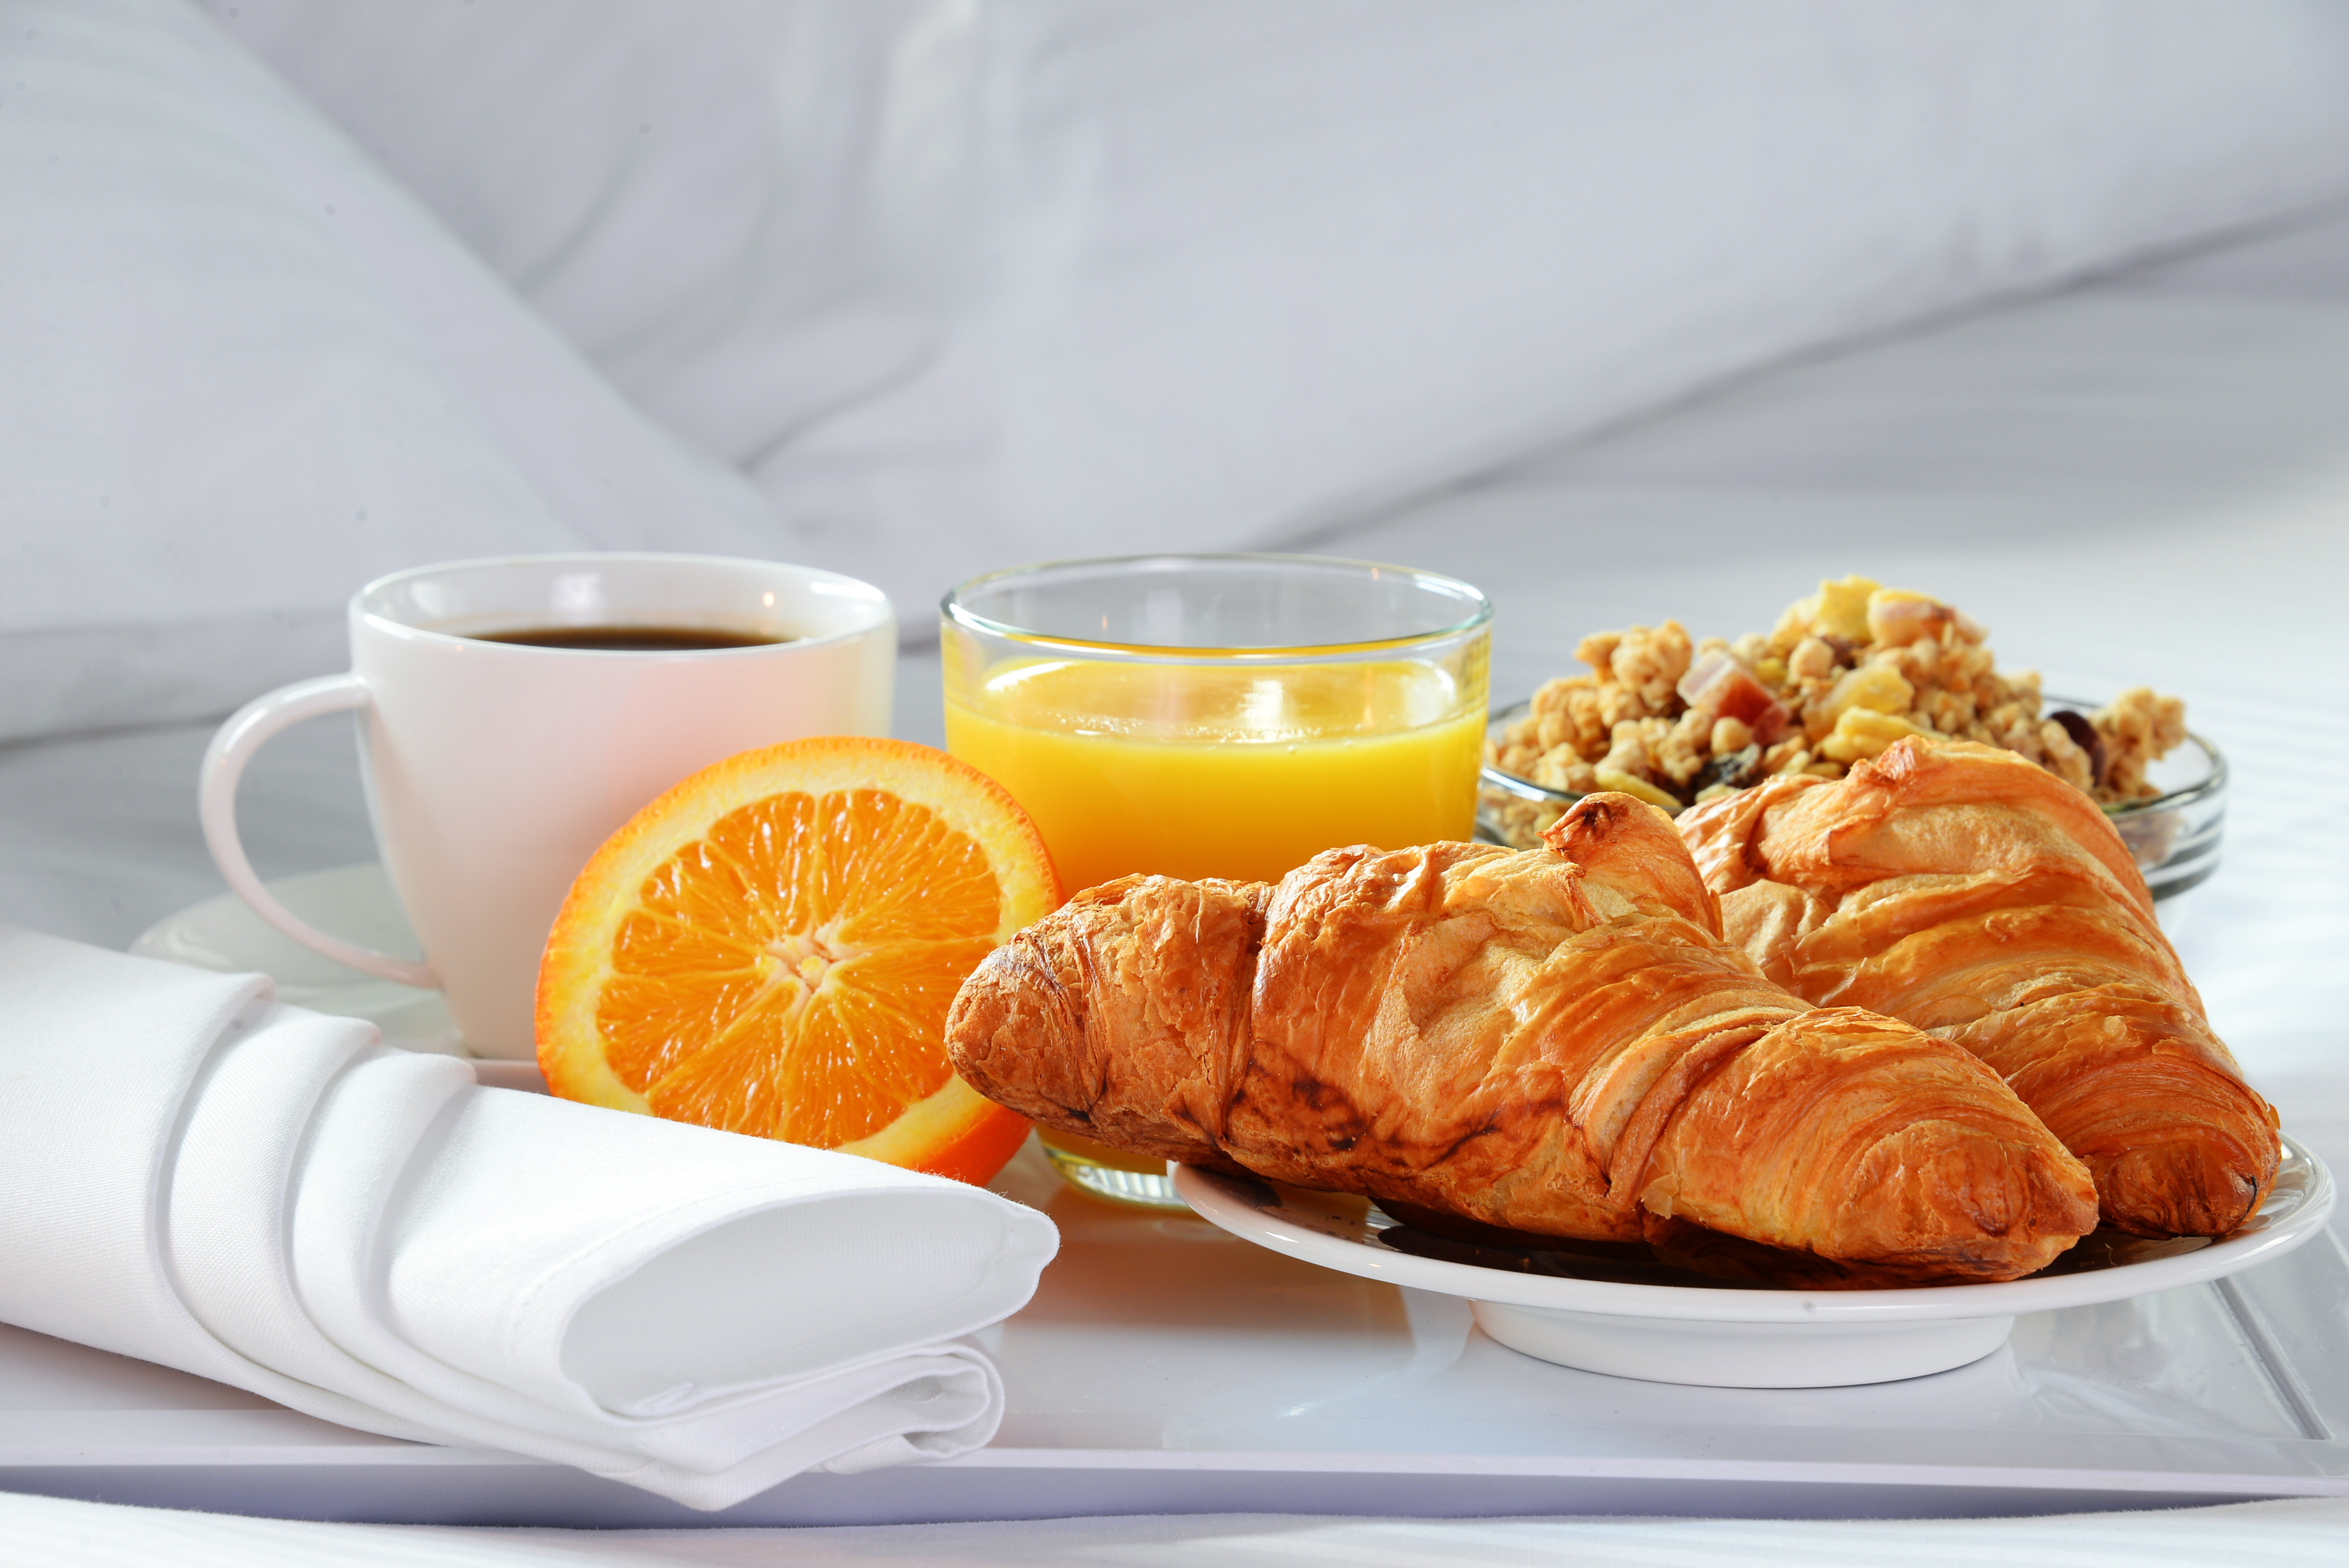 Frühstück mit Kaffee, einem Glas Orangensaft Müsli und Croissants auf einem Tablett in einem Bett platziert